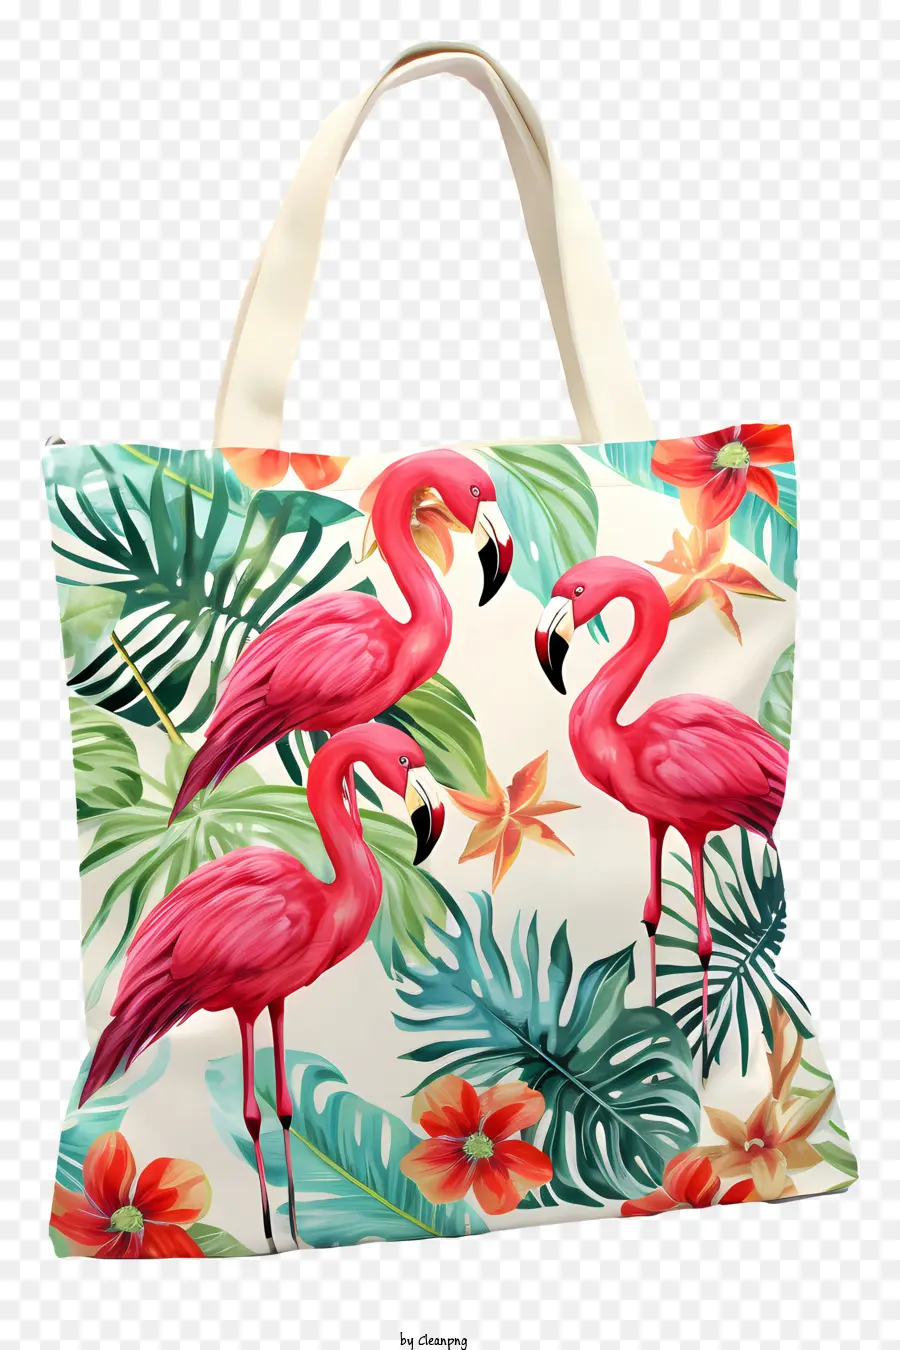 tote bag tote bag pink flamingo pattern floral print large tote bag